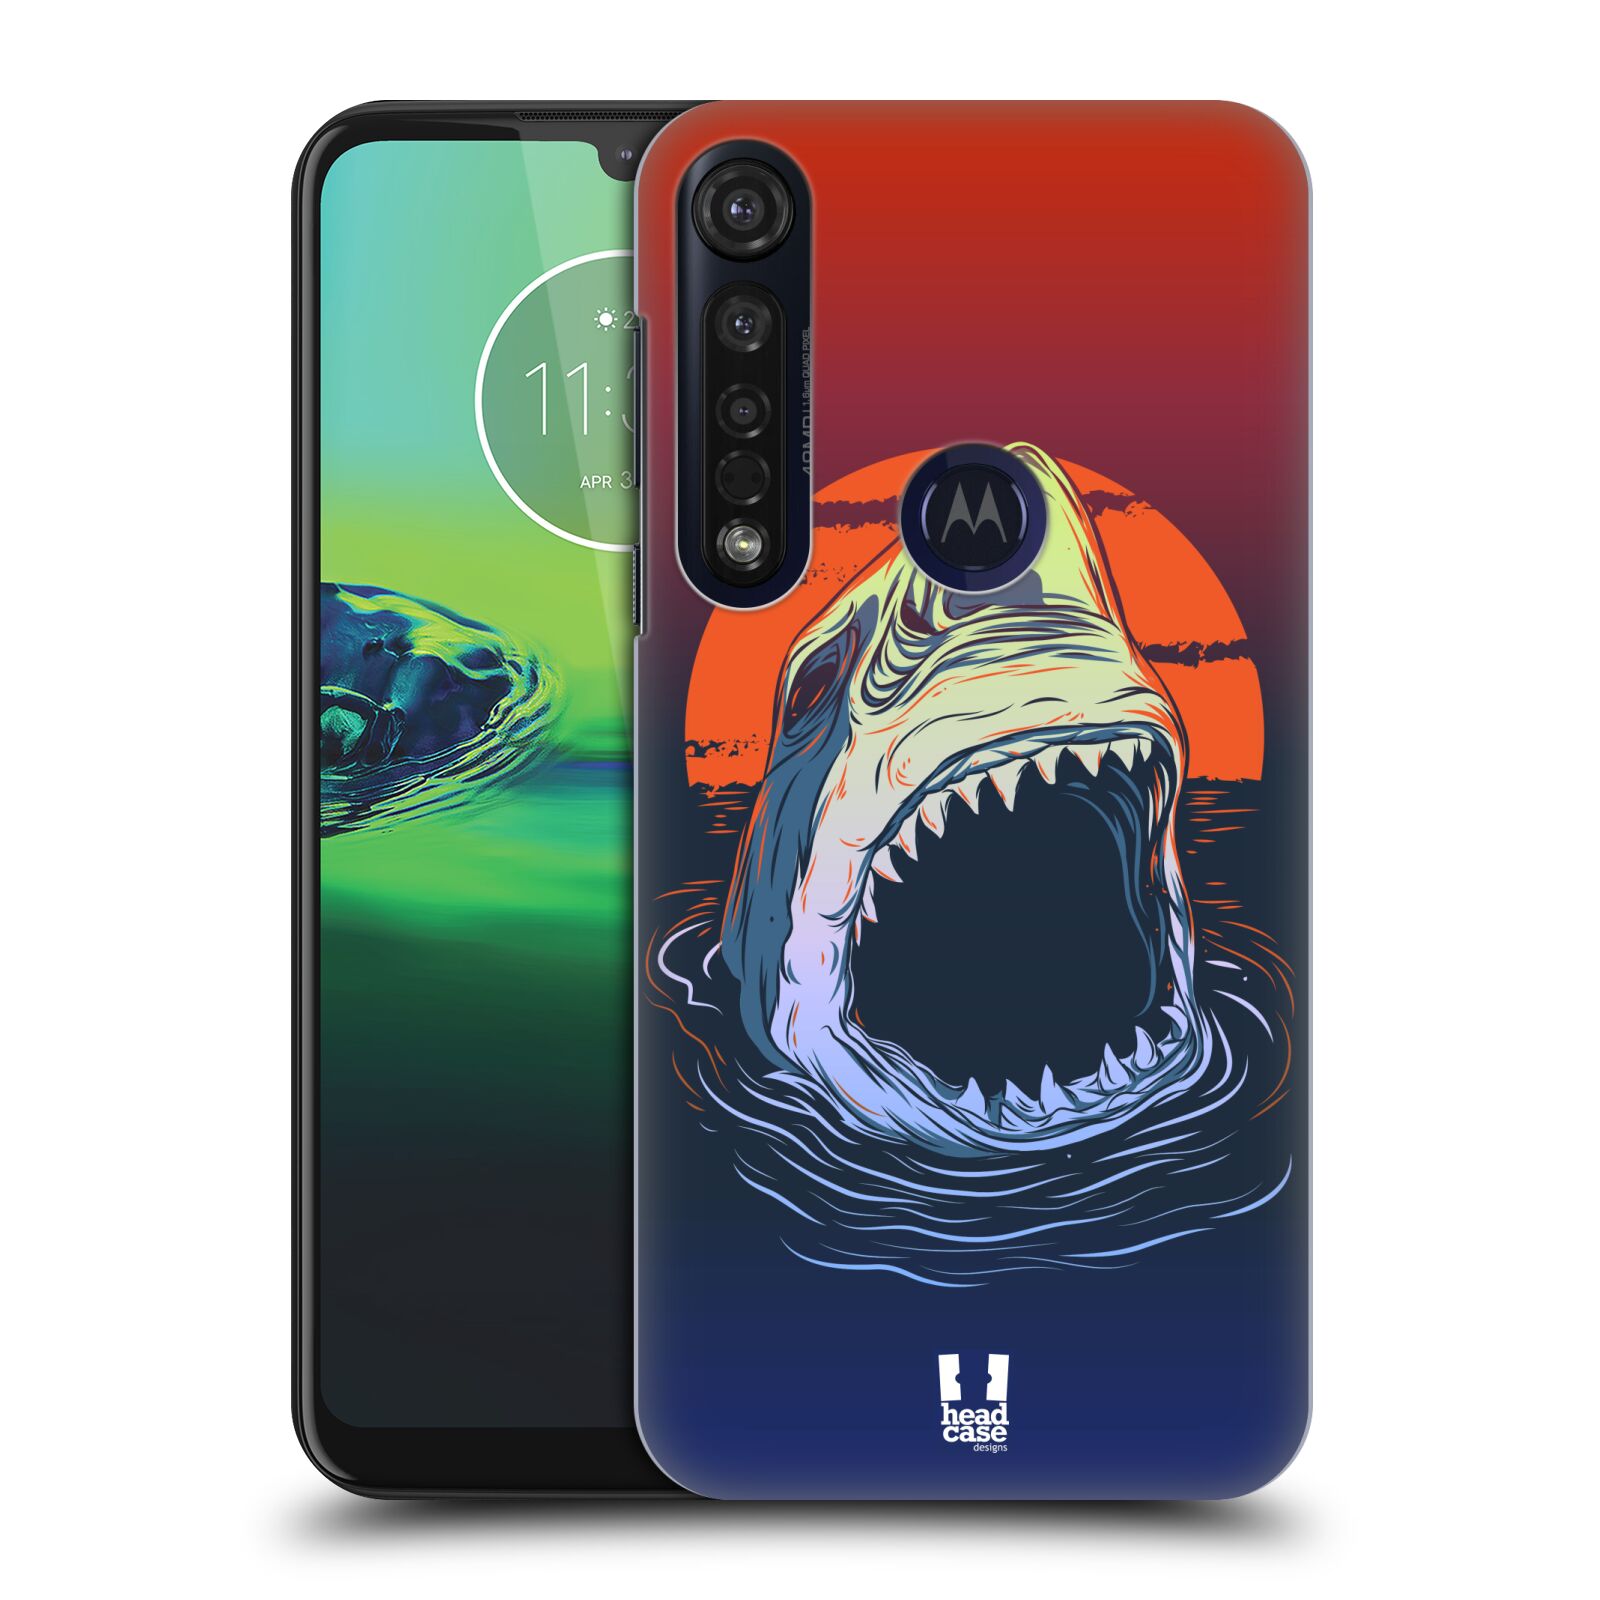 Pouzdro na mobil Motorola Moto G8 PLUS - HEAD CASE - vzor mořská monstra žralok